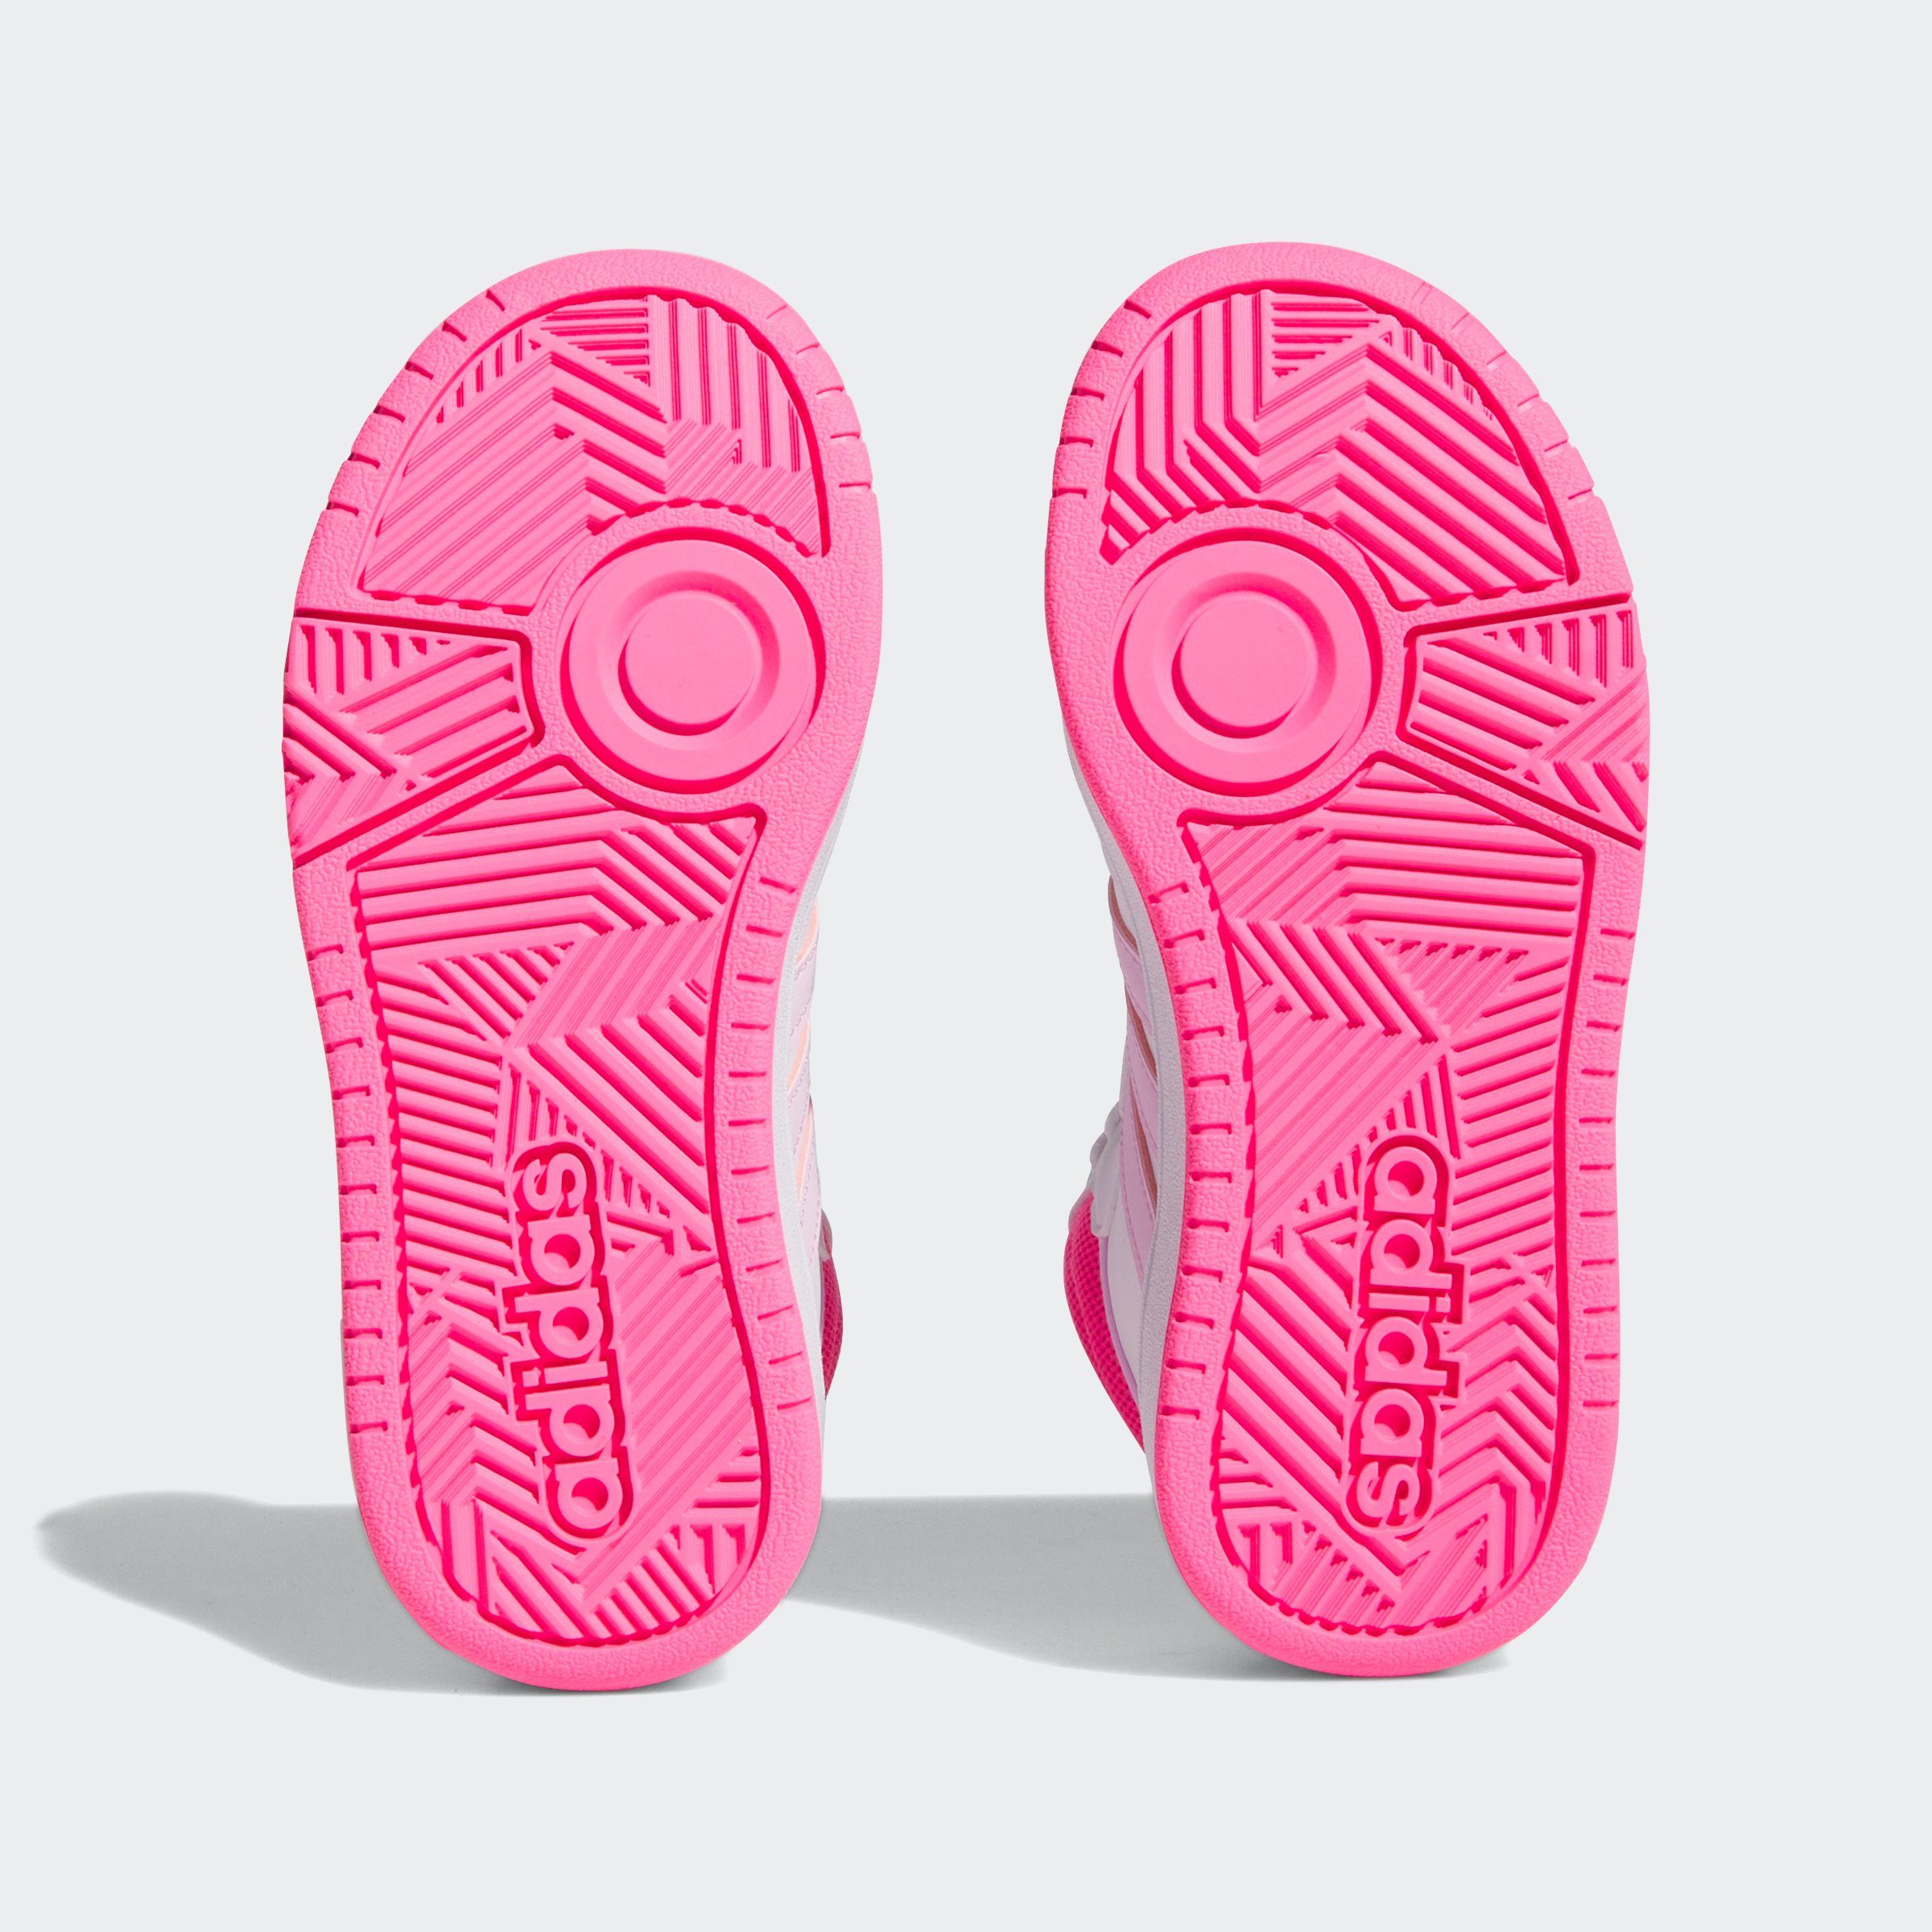 Sneaker Sportswear weiß-rosa adidas MID HOOPS